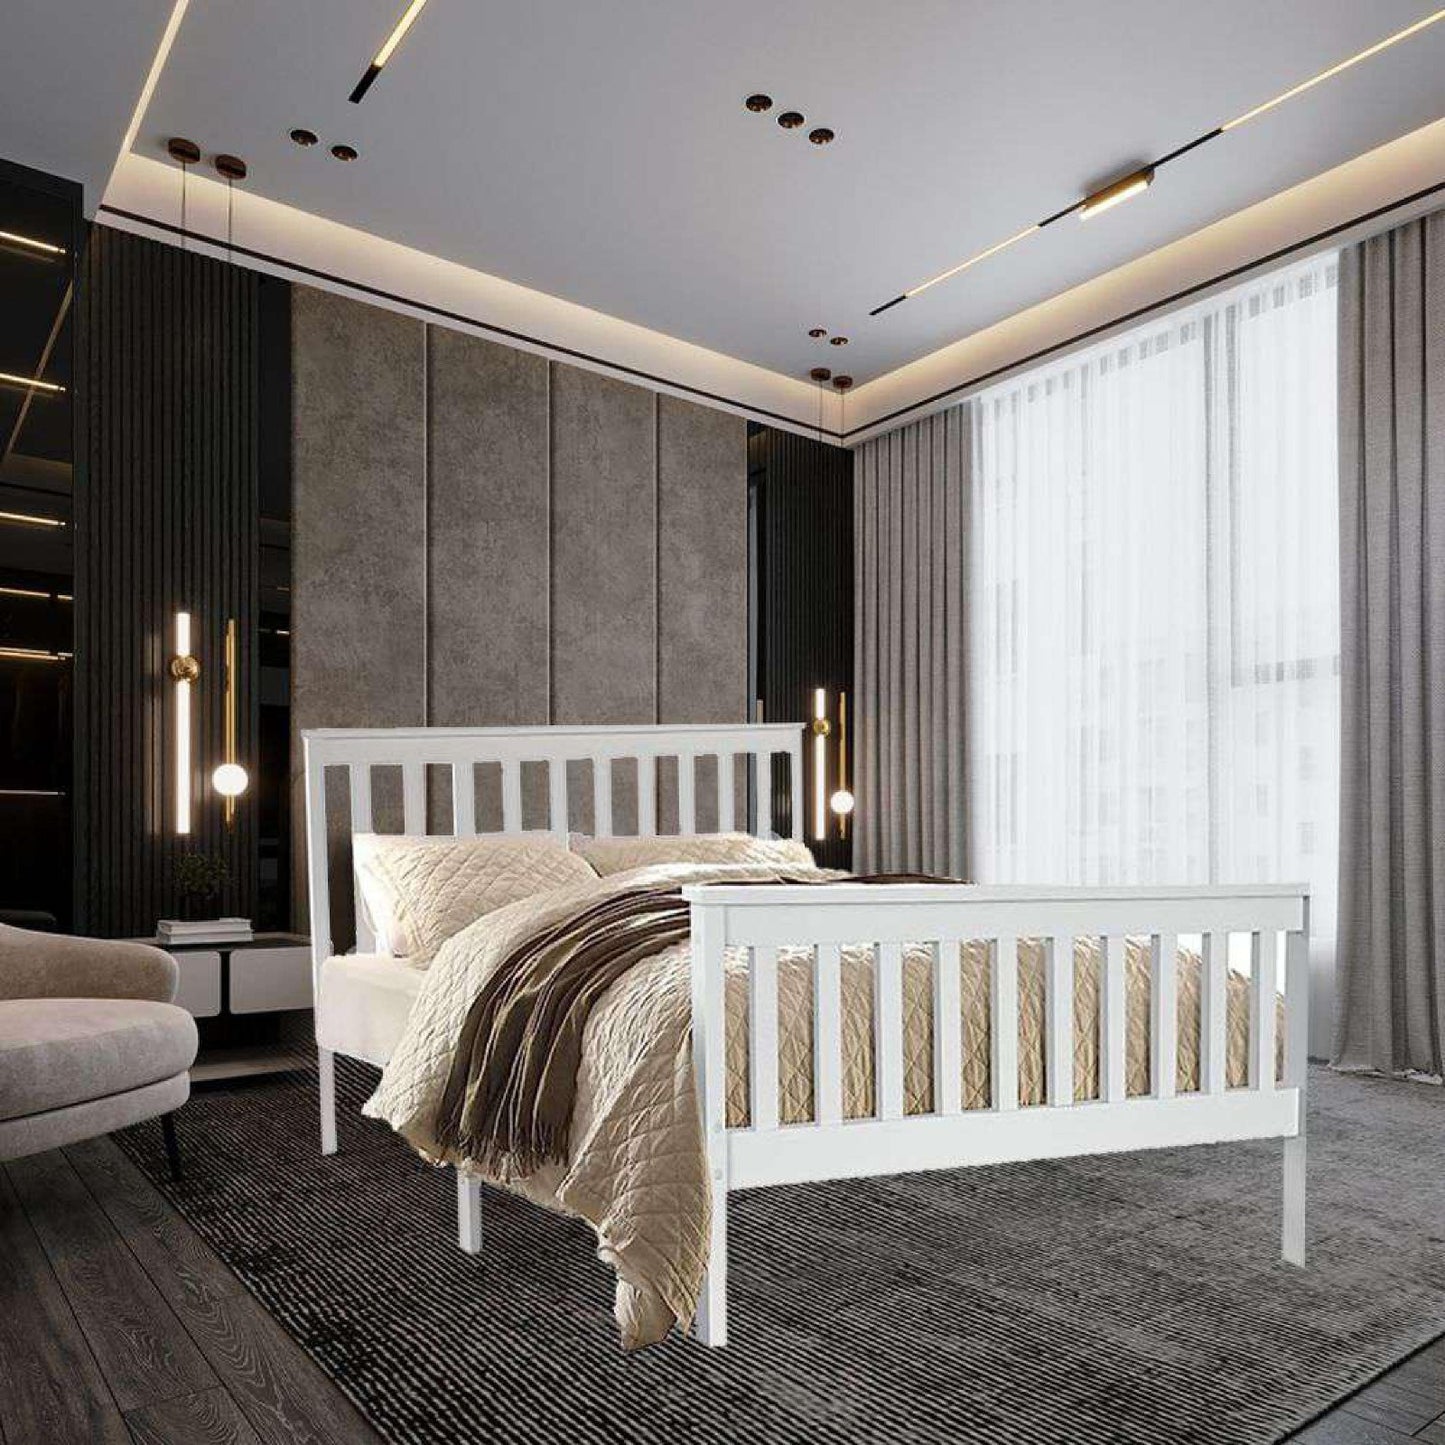 4.6ft Stylish and Elegant White Double Pinewood Bed Frame